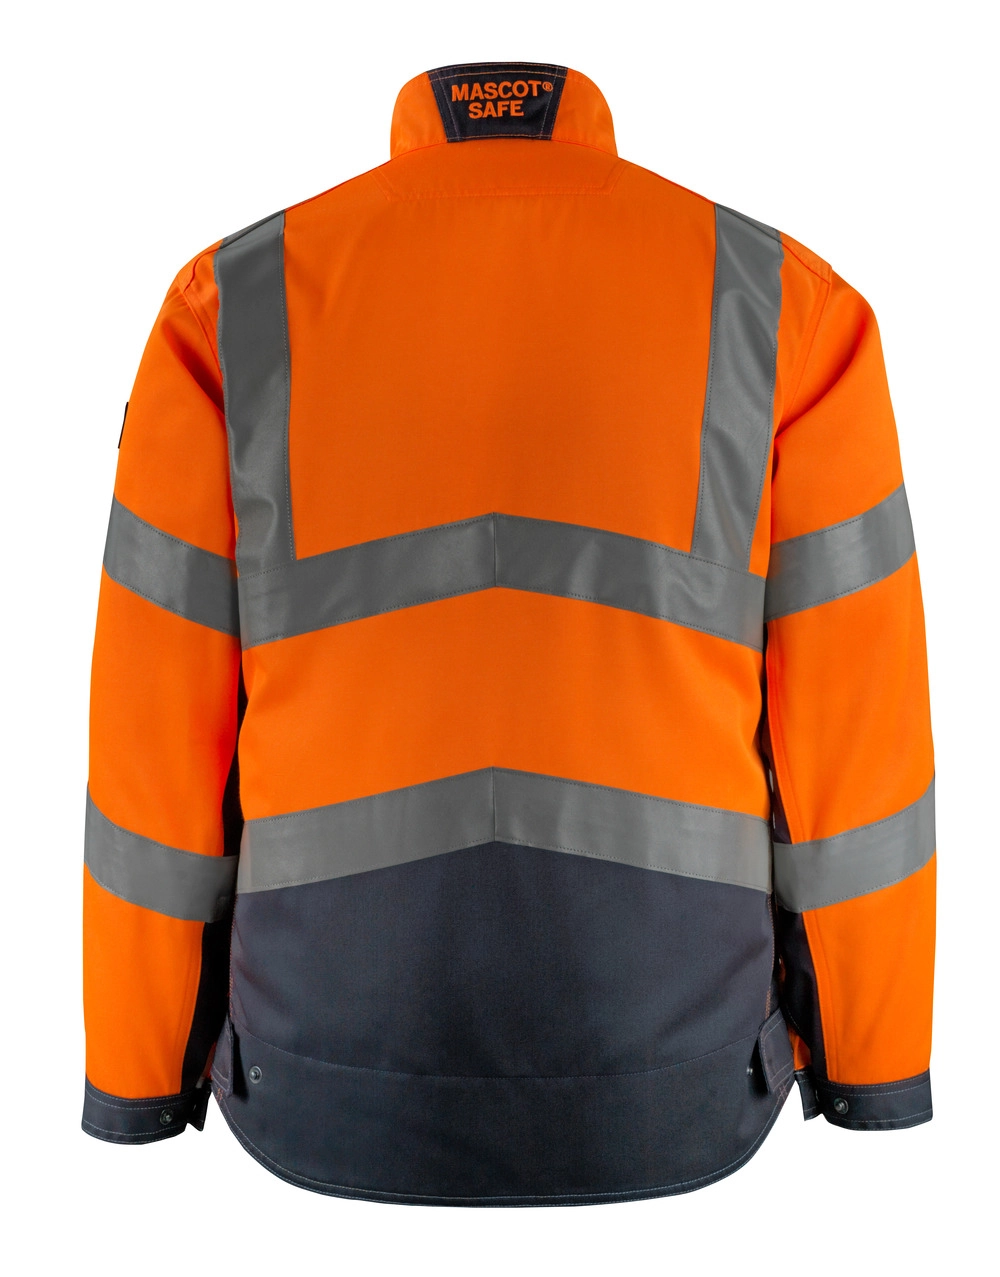 MASCOT® Oxford Arbeitsjacke Größe 3XL, hi-vis orange/schwarzblau